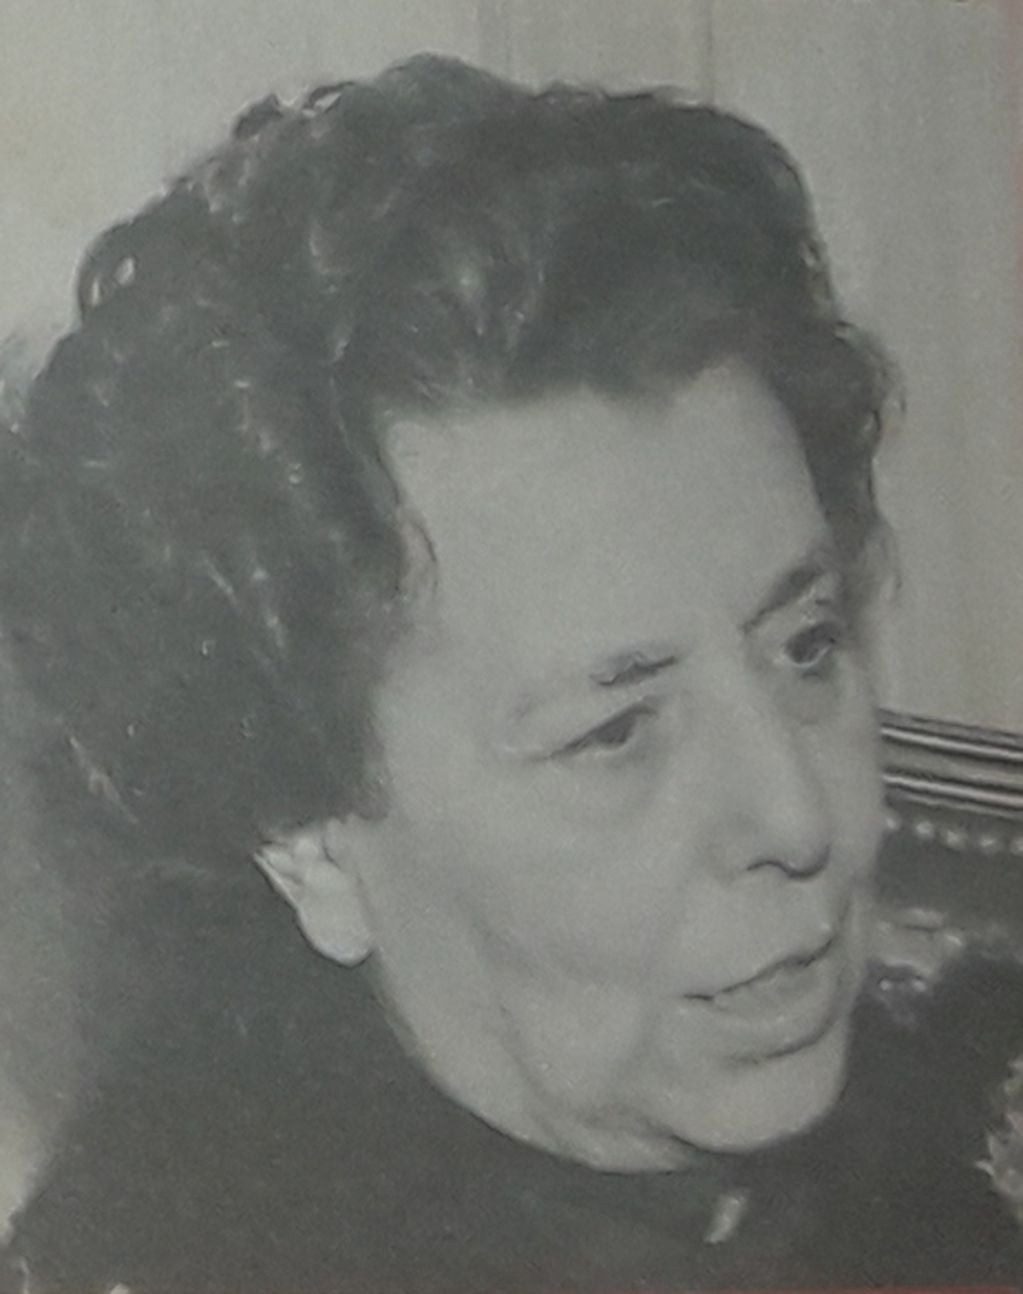 La página de Margarita Malharro de Torres en Wikipedia también fue creada por la comunicadora social Rosana Palazzi, autora de su biografía. Foto: Wikipedia.